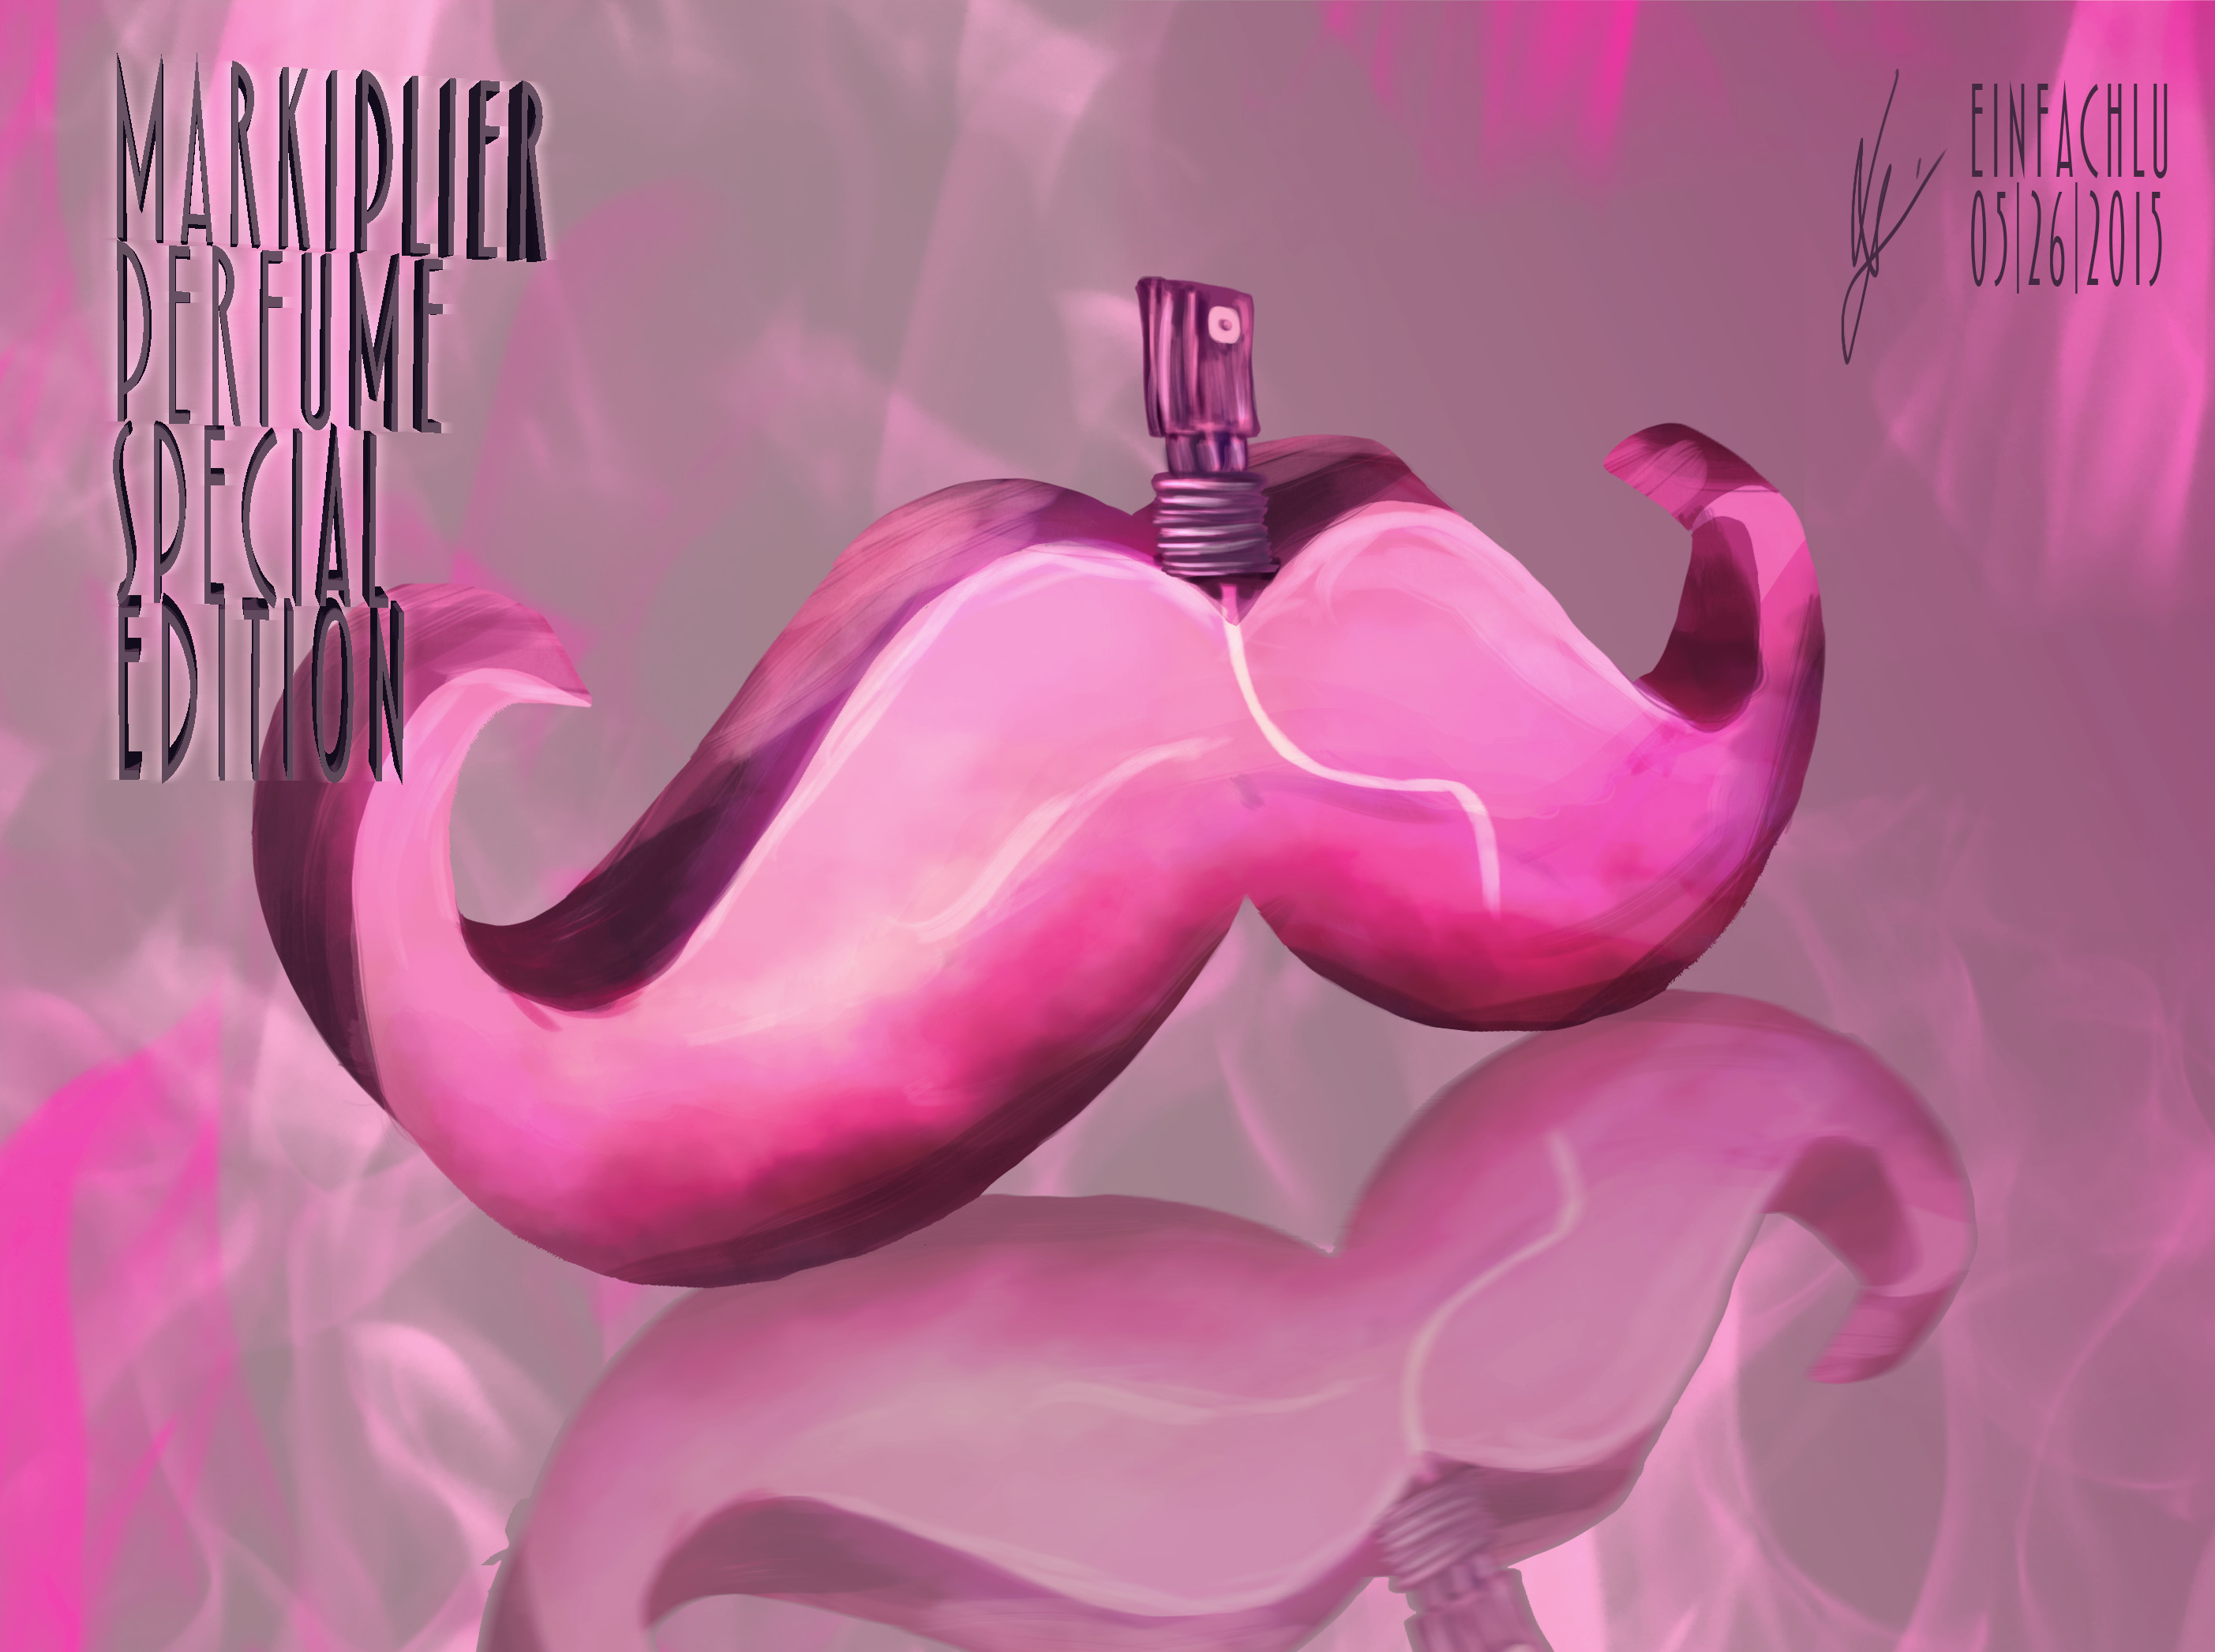 2806x2093 Markiplier - Mustache perfume by LuisaPietsch.deviantart.com on @DeviantArt  | Deviant art Loves! | Pinterest | Markiplier mustache, Art and Markiplier